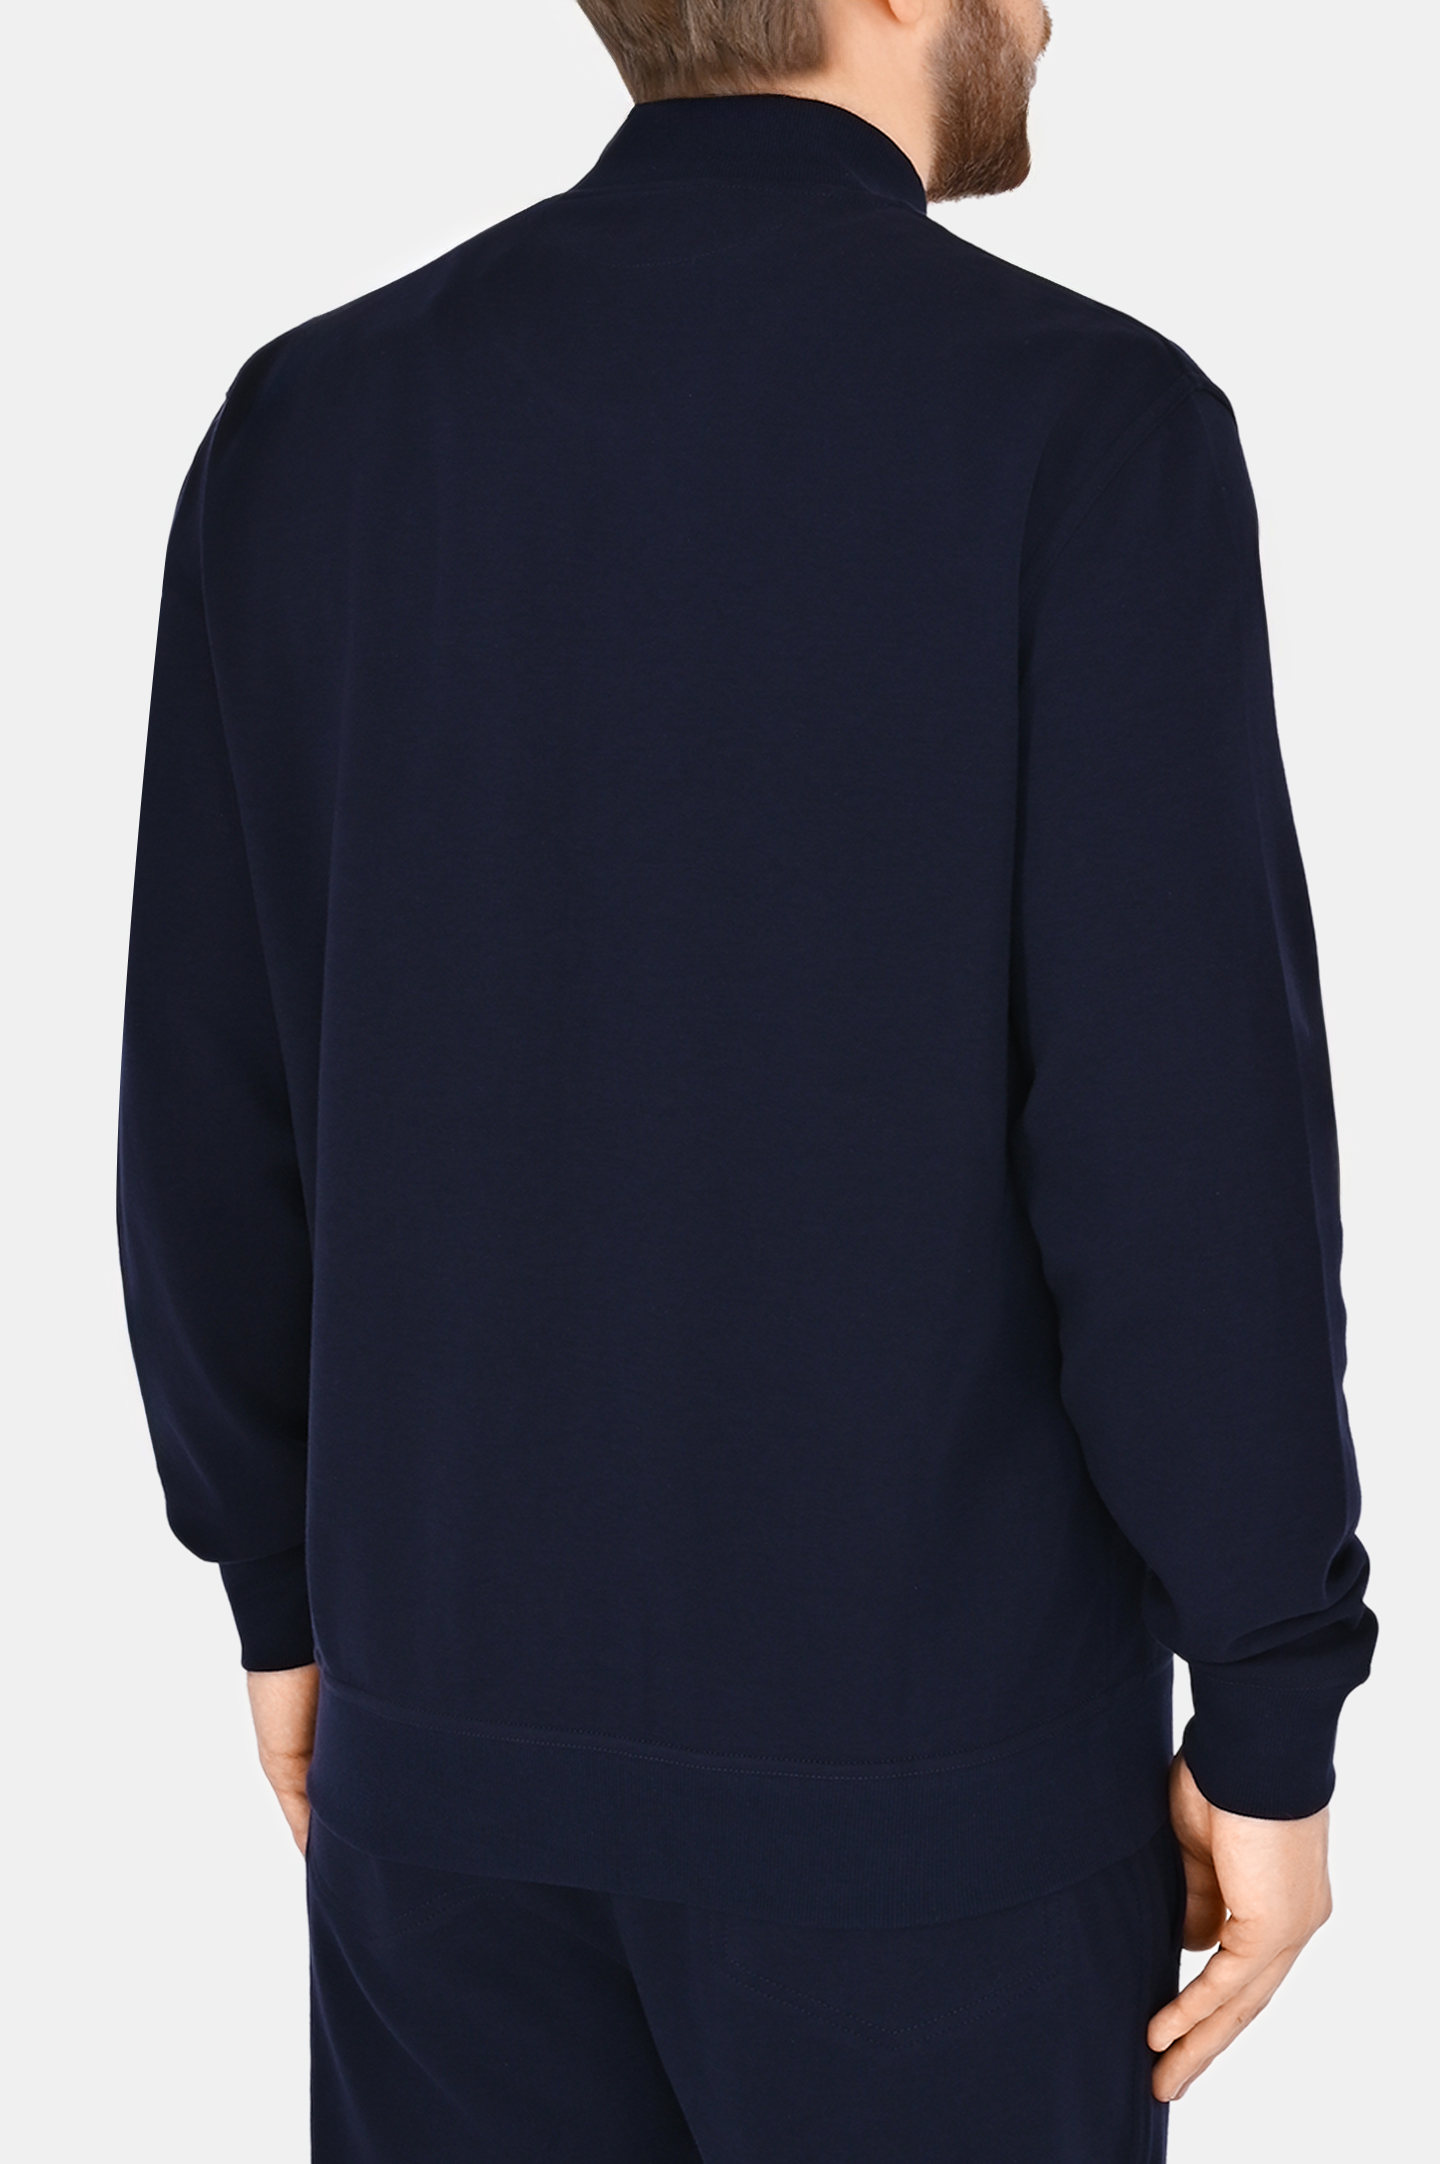 Куртка спорт BRUNELLO  CUCINELLI M0T35B2278, цвет: Темно-синий, Мужской